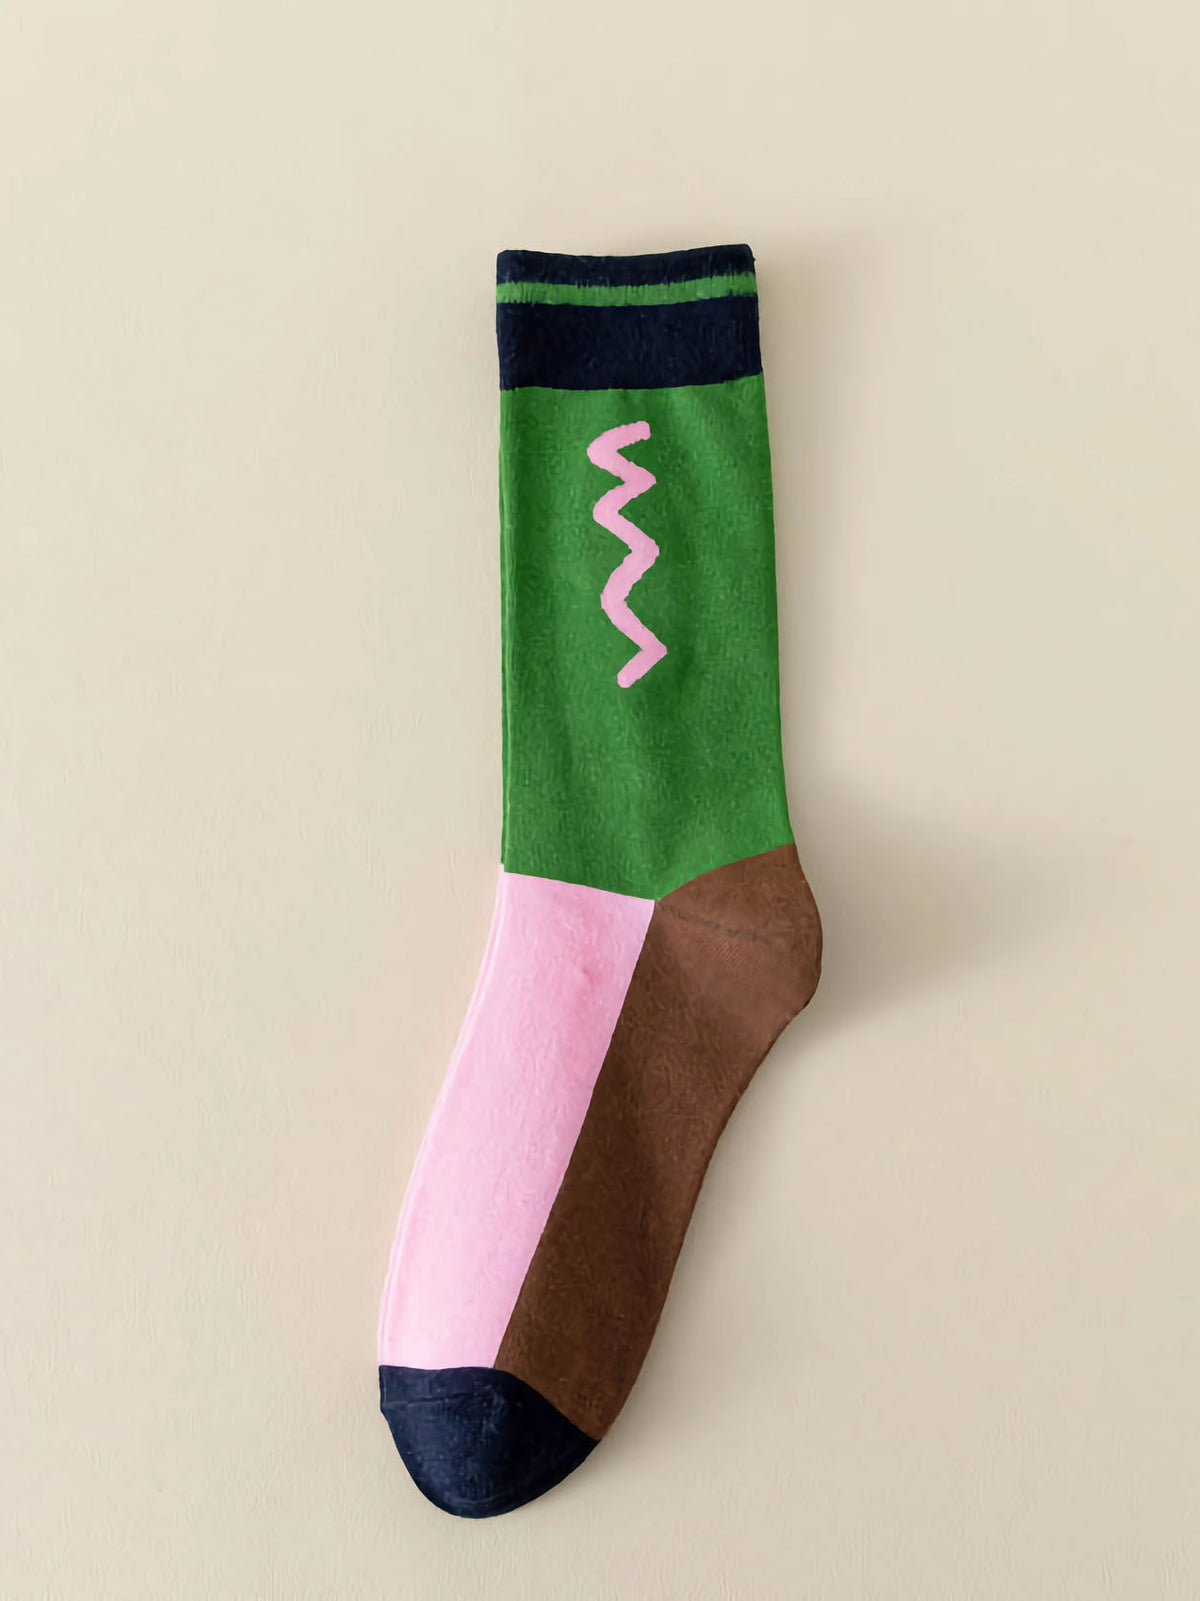 Bild von Color Blocking Socken in braun, grün und pink sowie einem geometrischen Muster in der grünen Fläche unterhalb des Bundes